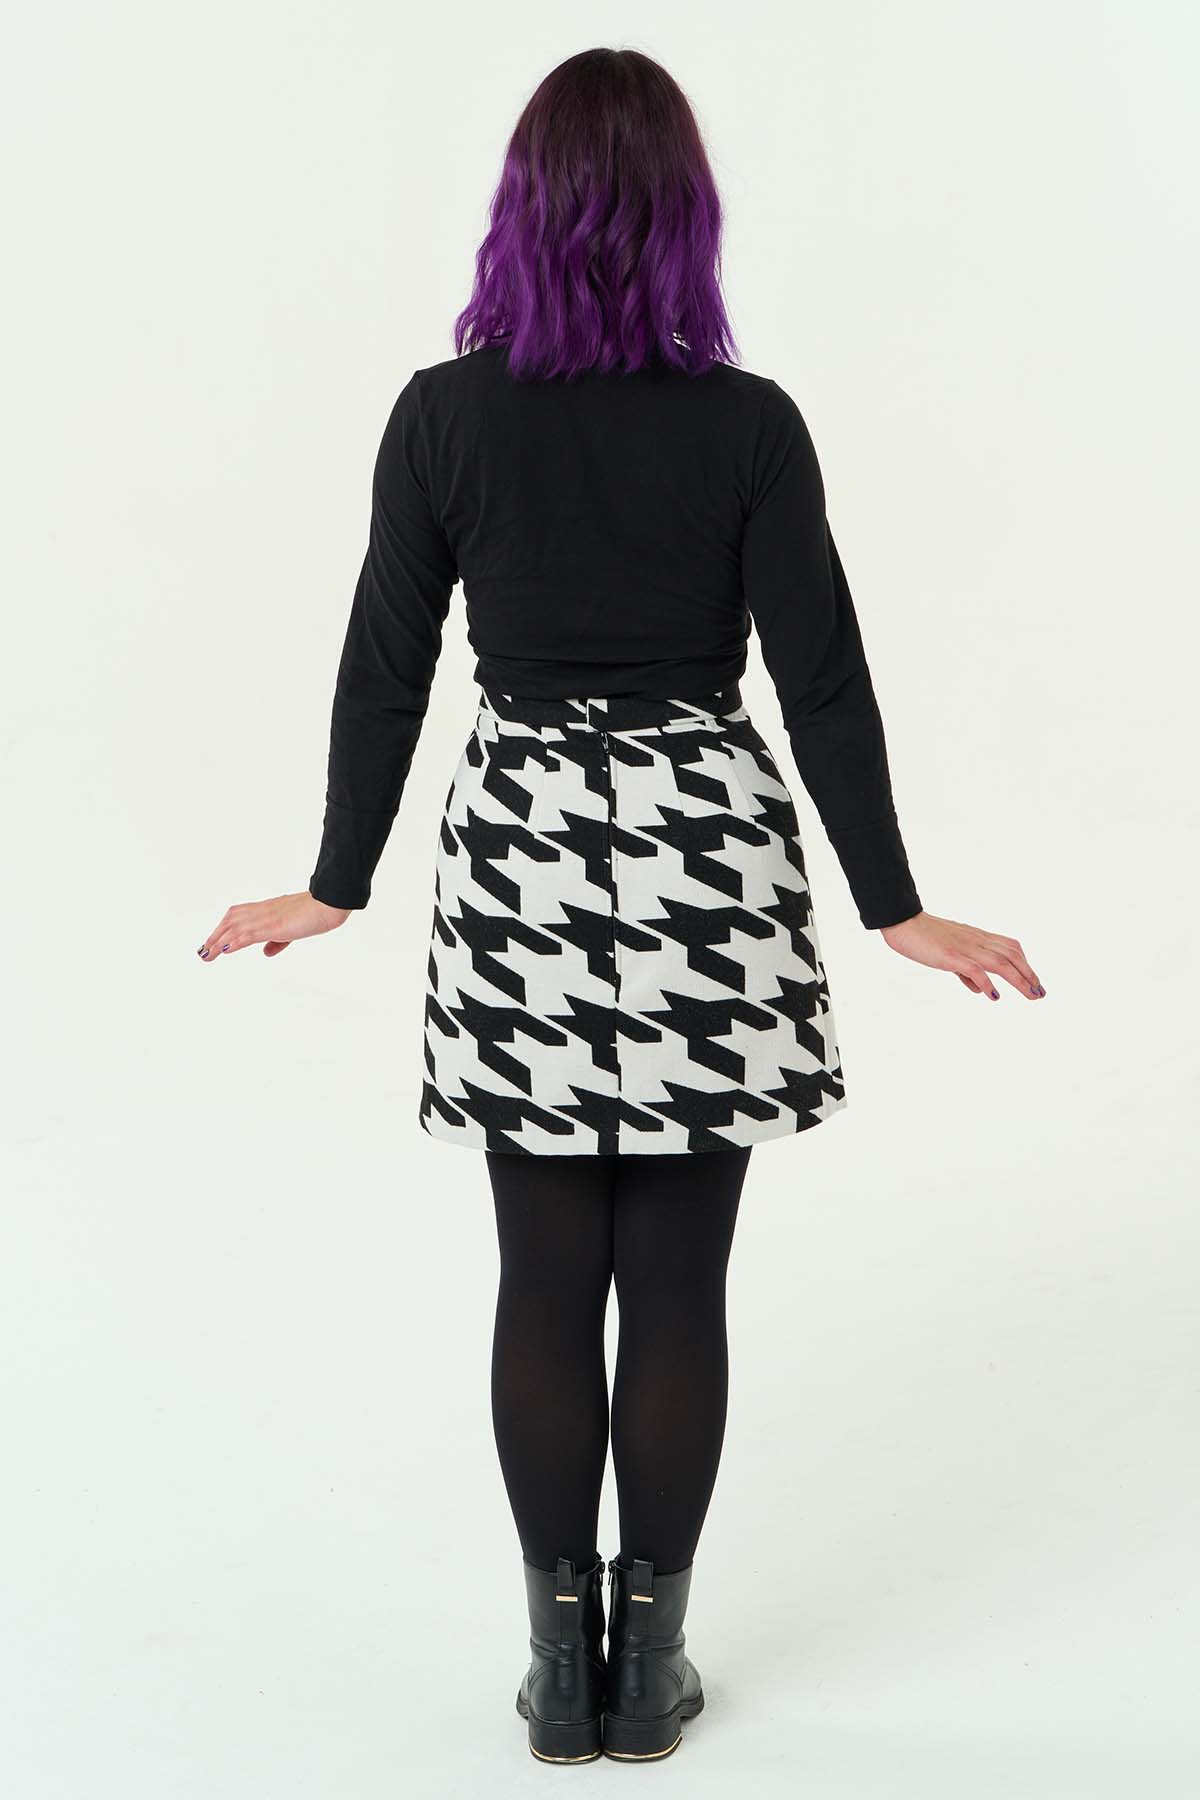 Ava Skirt Sewing Pattern